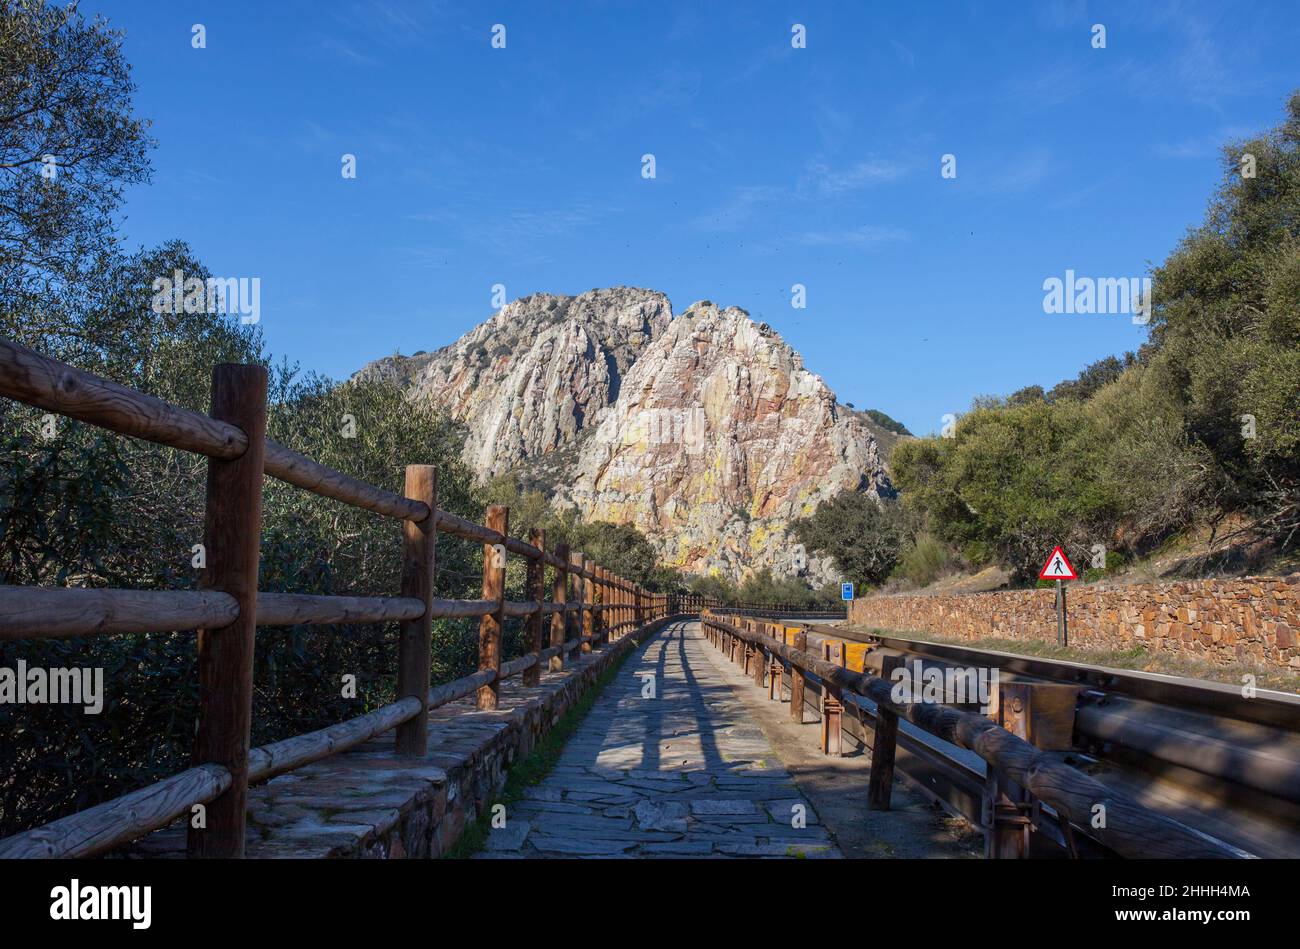 Sentiero escursionistico per il fronte roccioso del Salto del Gitano, accanto alla strada ex-208. Parco Nazionale di Monfrague, Caceres, Extremadura, Spagna. Foto Stock